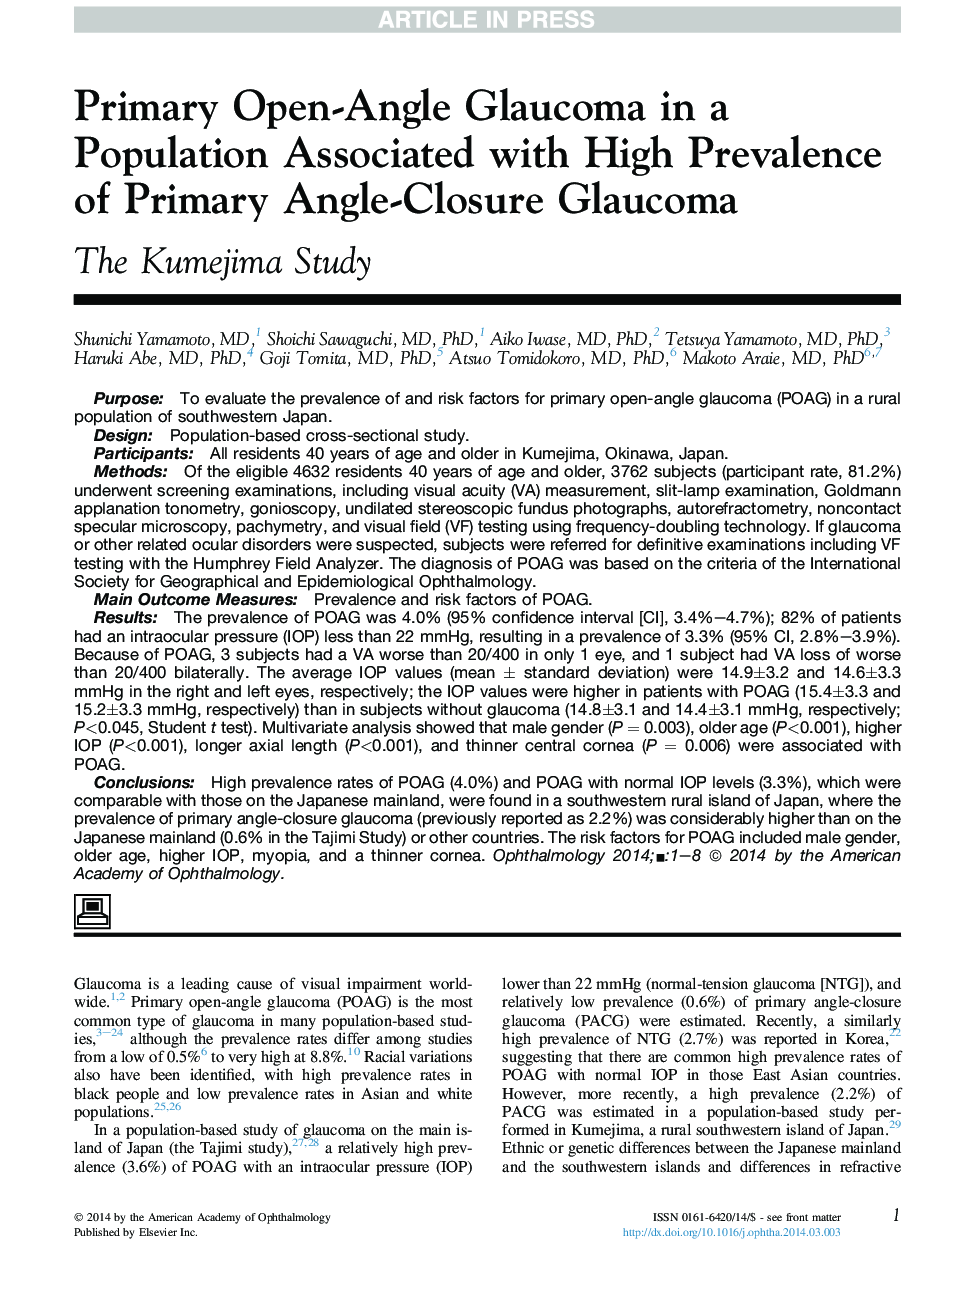 نخستین گلوکوم زاویه باز در یک جمعیت همراه با شیوع بالای گلوکوم بسته شدن زاویه اولیه 